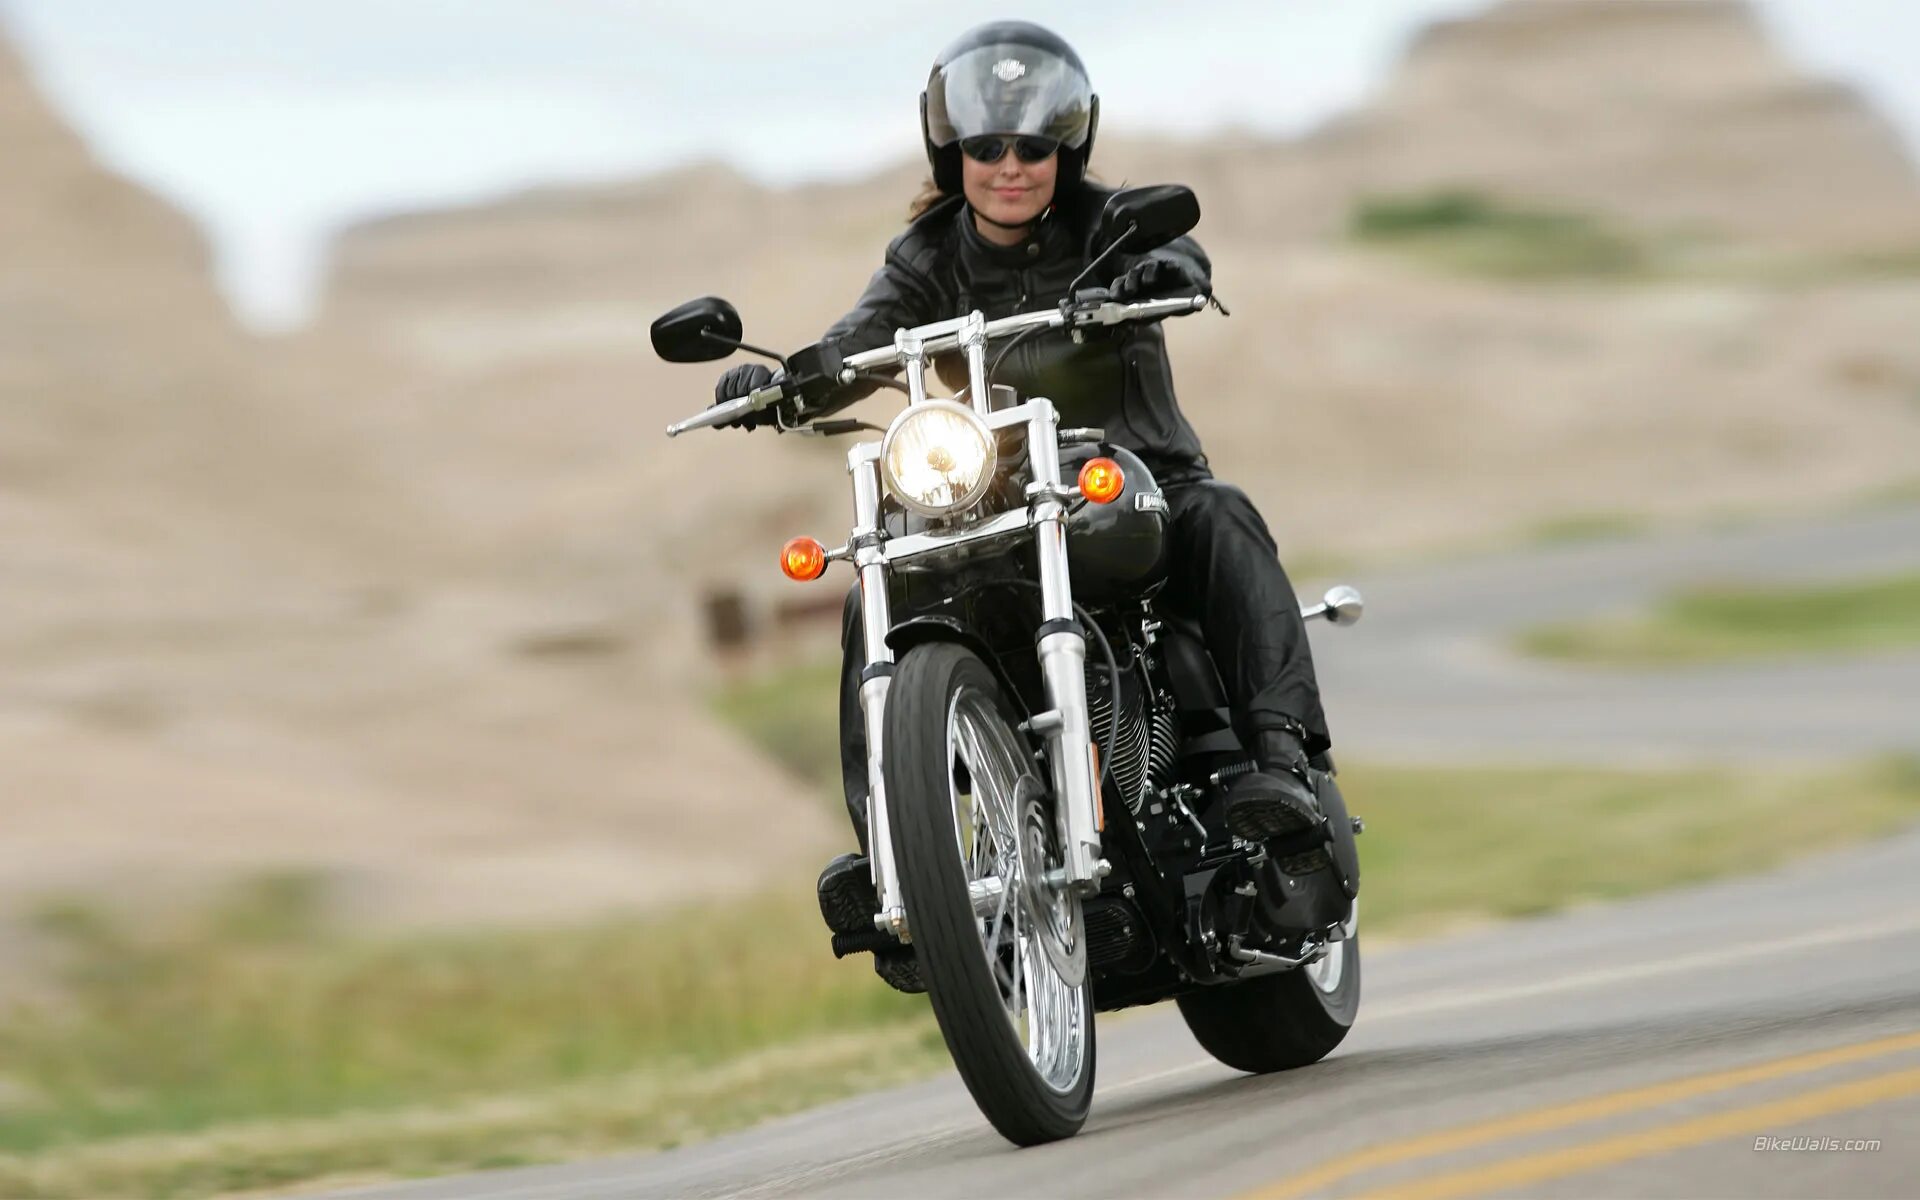 16 лет можно ездить на мотоцикле. Harley Davidson 2006 Softail Heritage. Женский Харлей Дэвидсон мотоцикл. Харлей Дэвидсон чоппер езда. Девушка на мотоцикле.